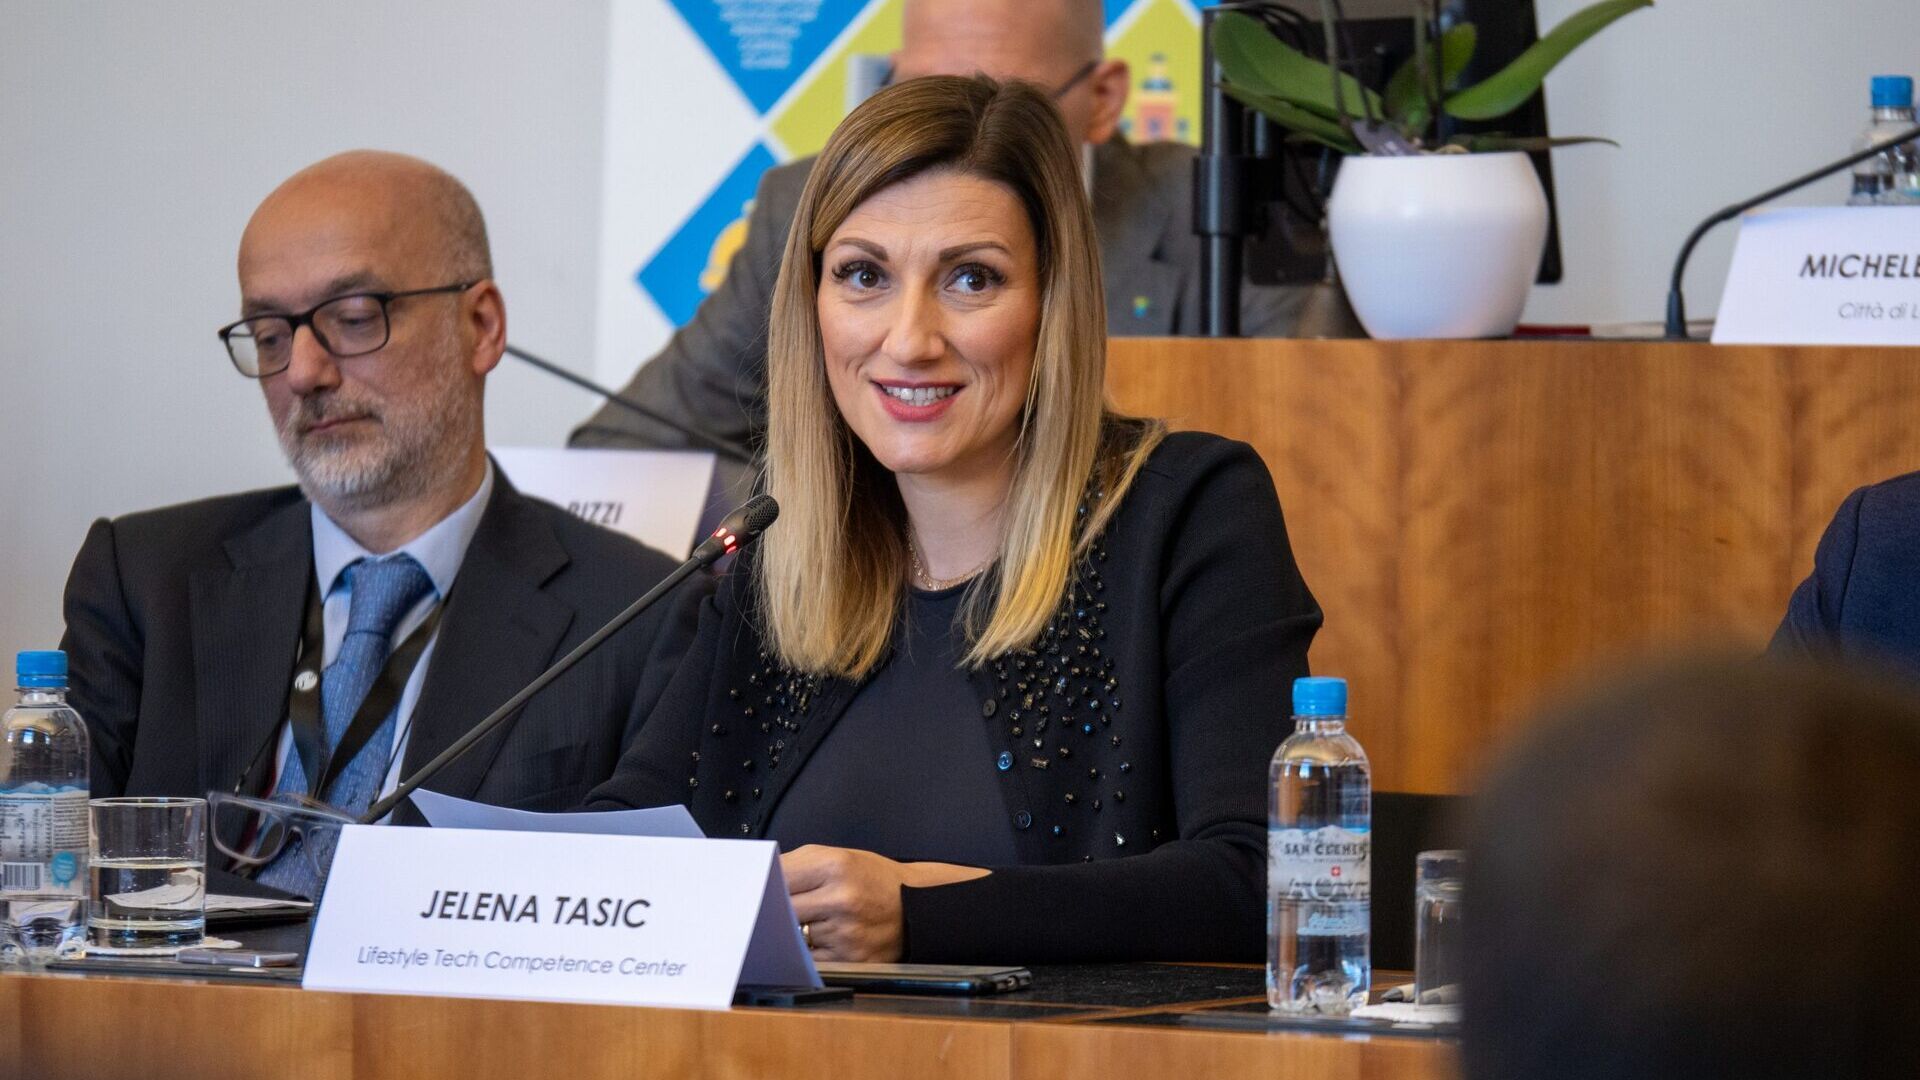 LTCC. Jelena Tašić Pizzolato-ն Lifestyle Tech Competence Center Association-ի գործադիր տնօրենն է